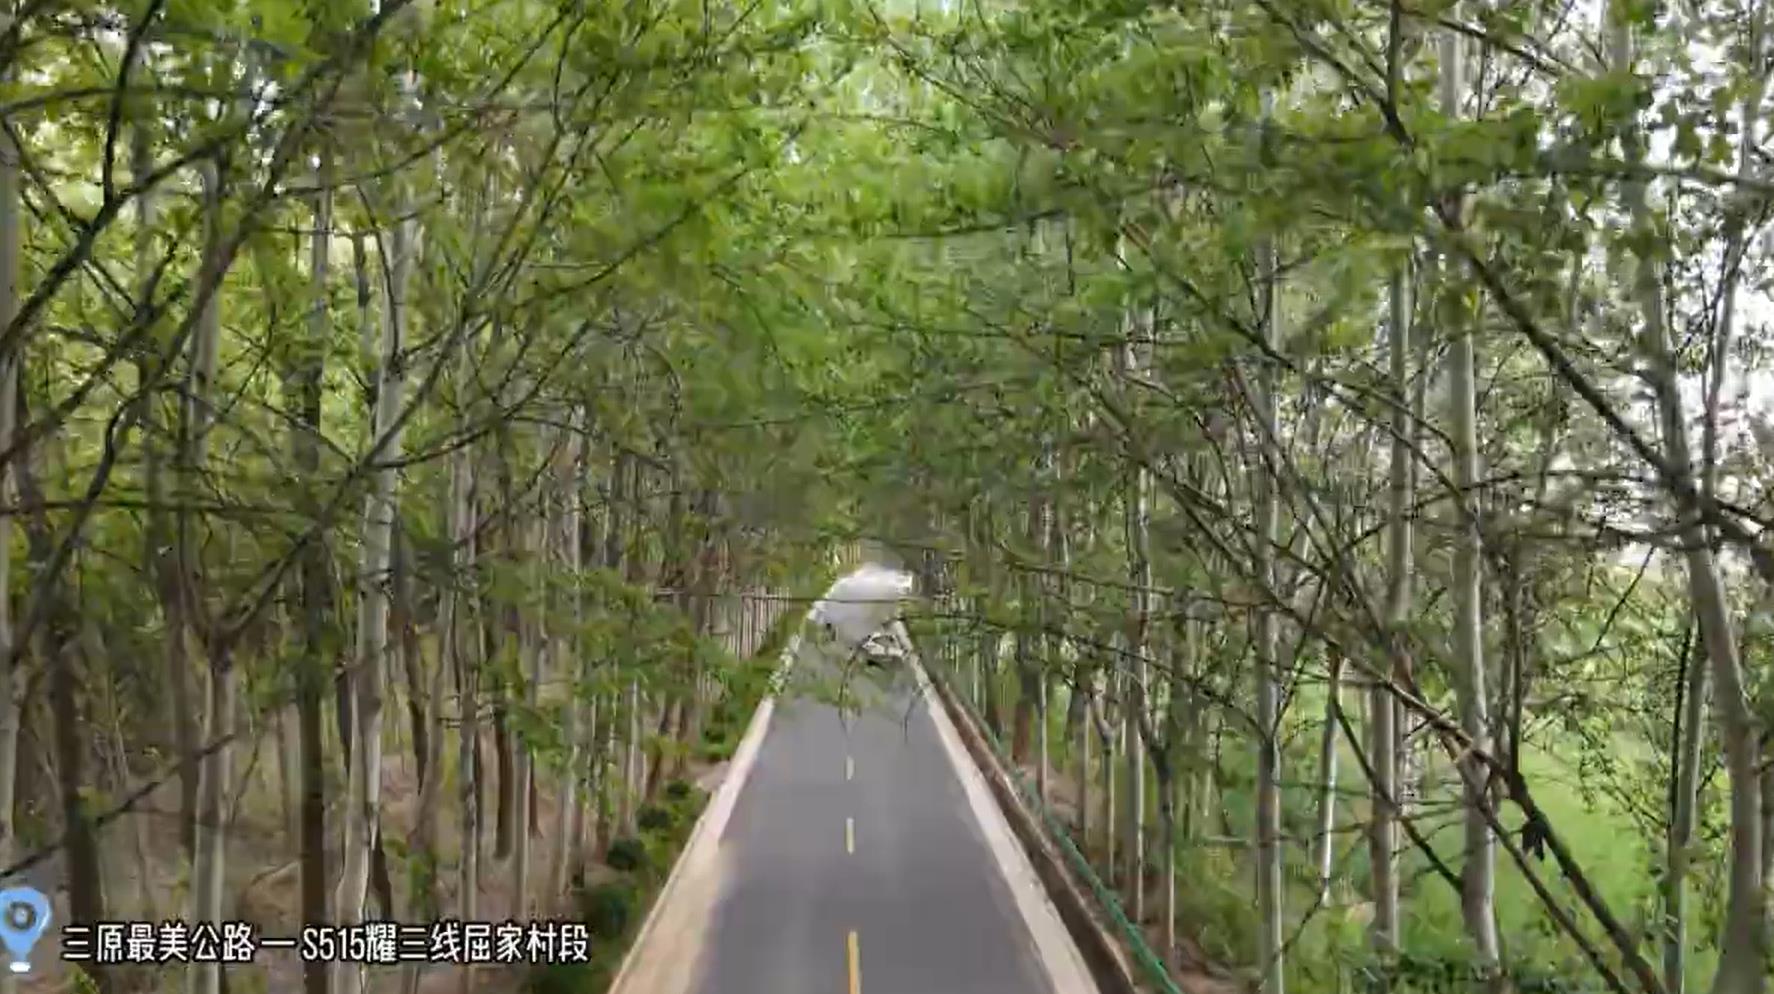 【视频】三原这条公路带你感受“最美的风景在路上” 